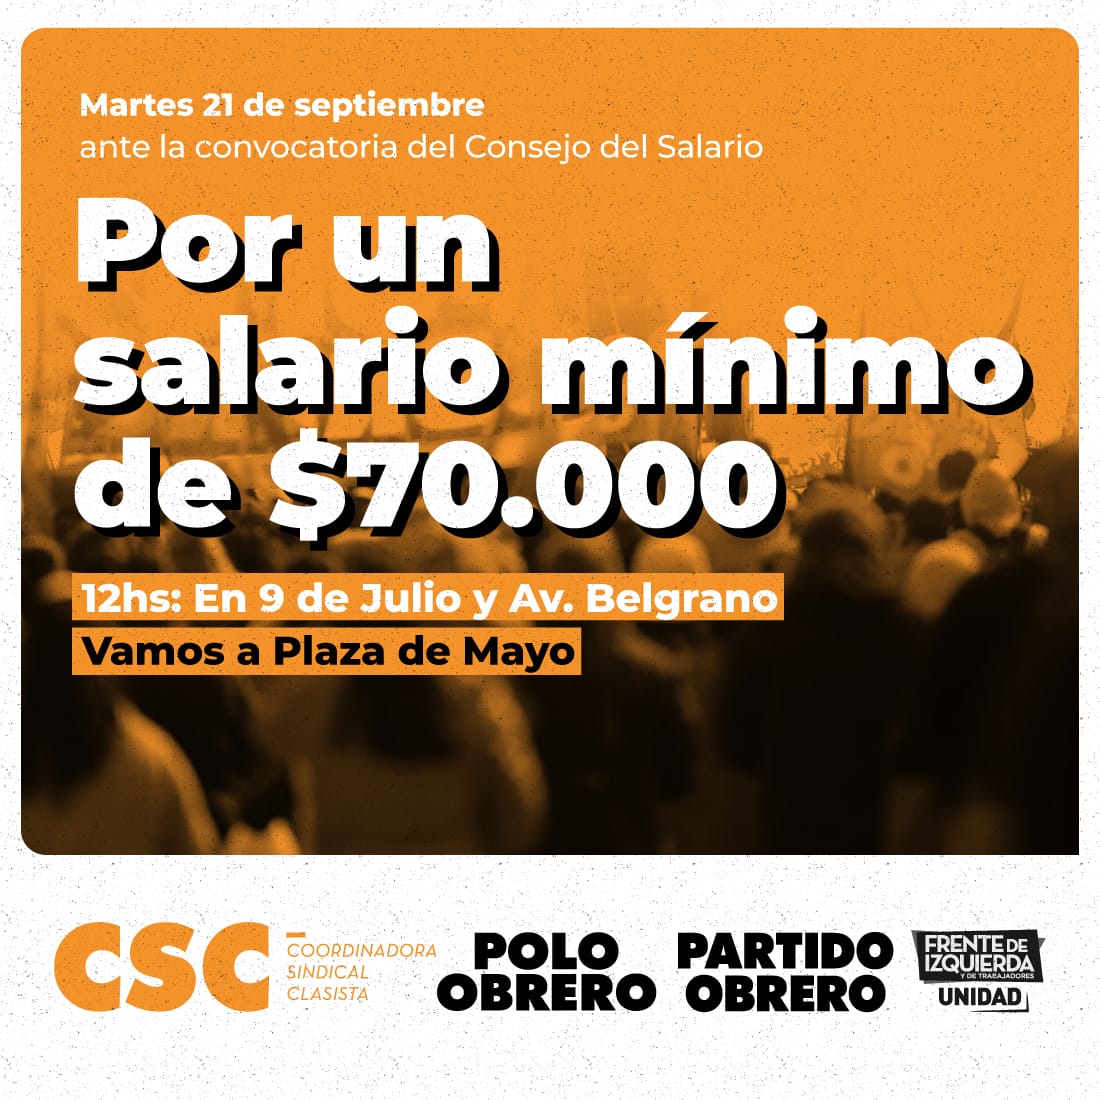 Martes 12h, 9 de Julio y Belgrano Trabajadoras de Casas Particulares movilizan por aumento salarial urgente